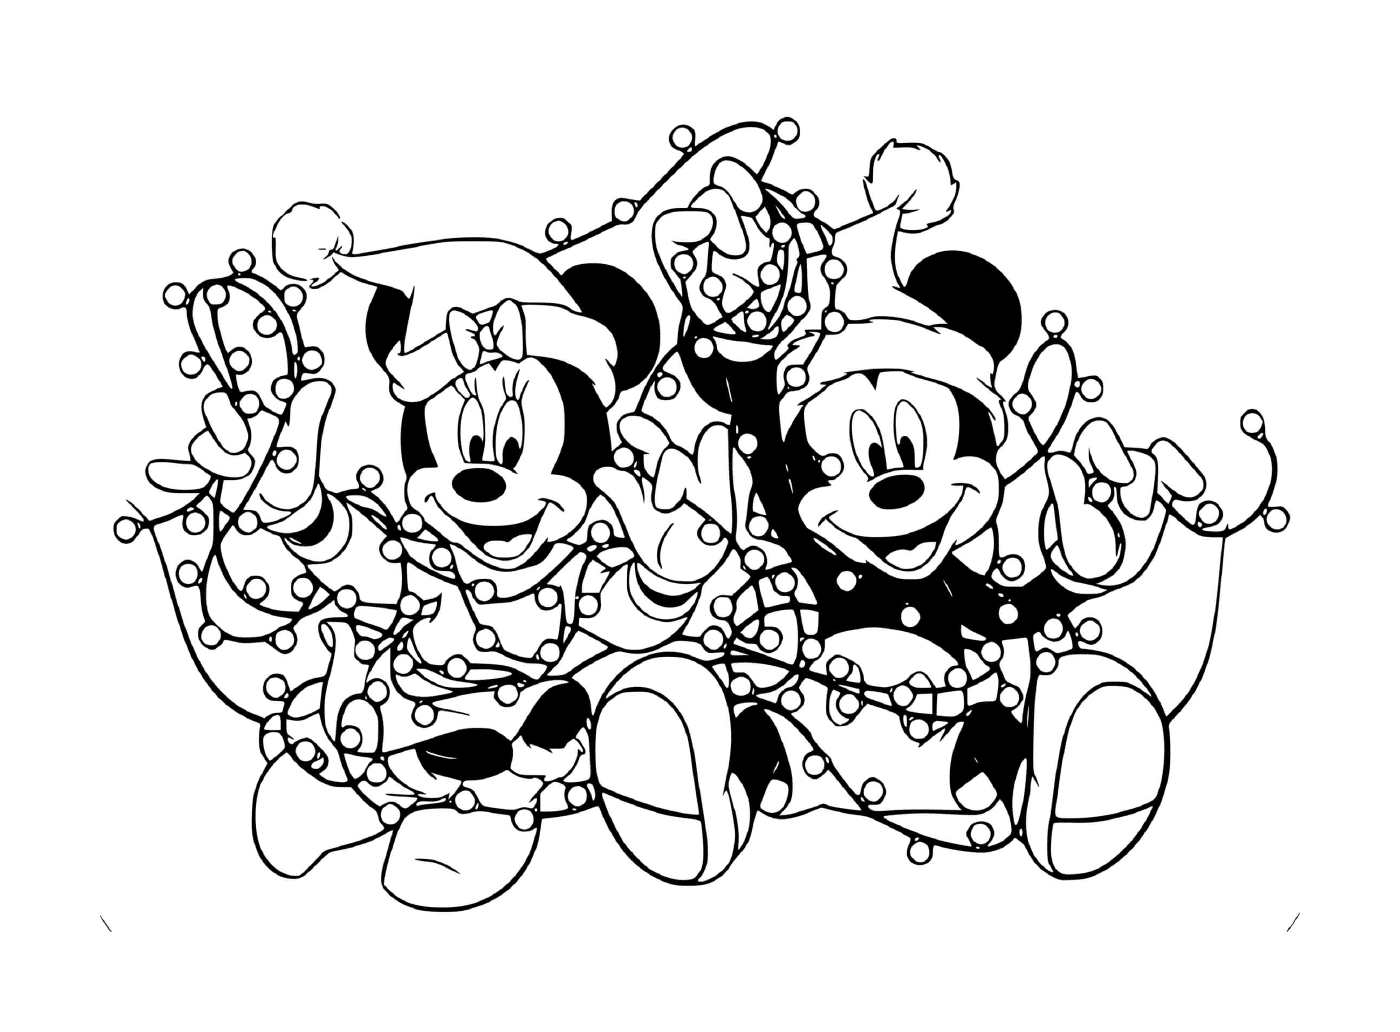   Mickey et Minnie emmêlés dans les lumières 